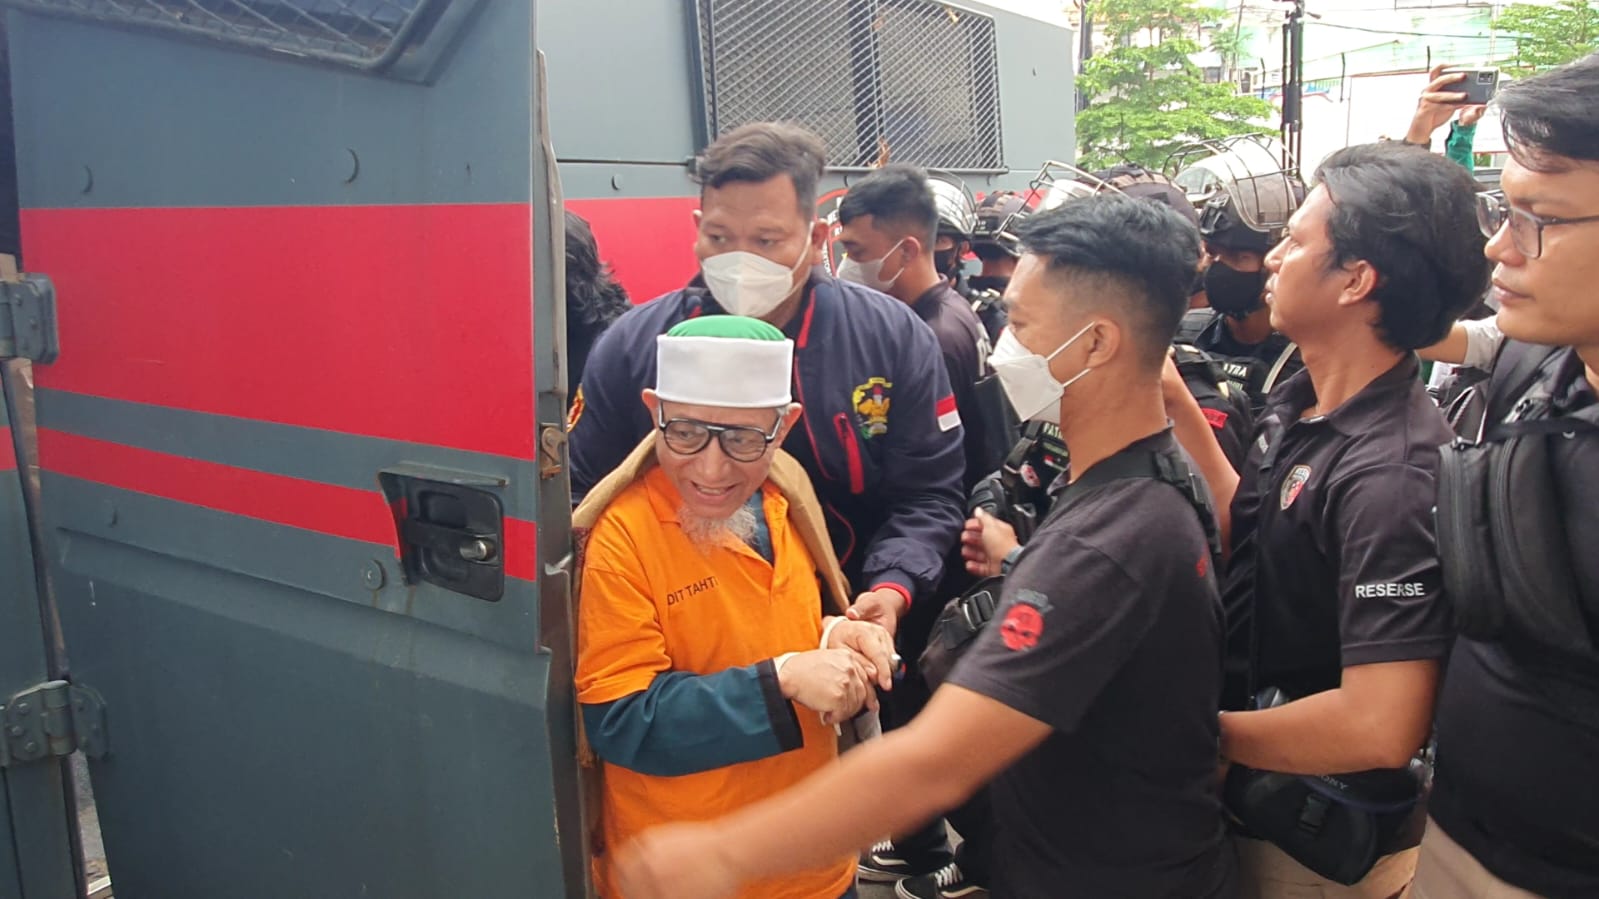 Polda Metro Jaya Serahkan Tersangka dan Barang Bukti Khilafatul Muslimin ke Kejaksaan Negeri Kota Bekasi